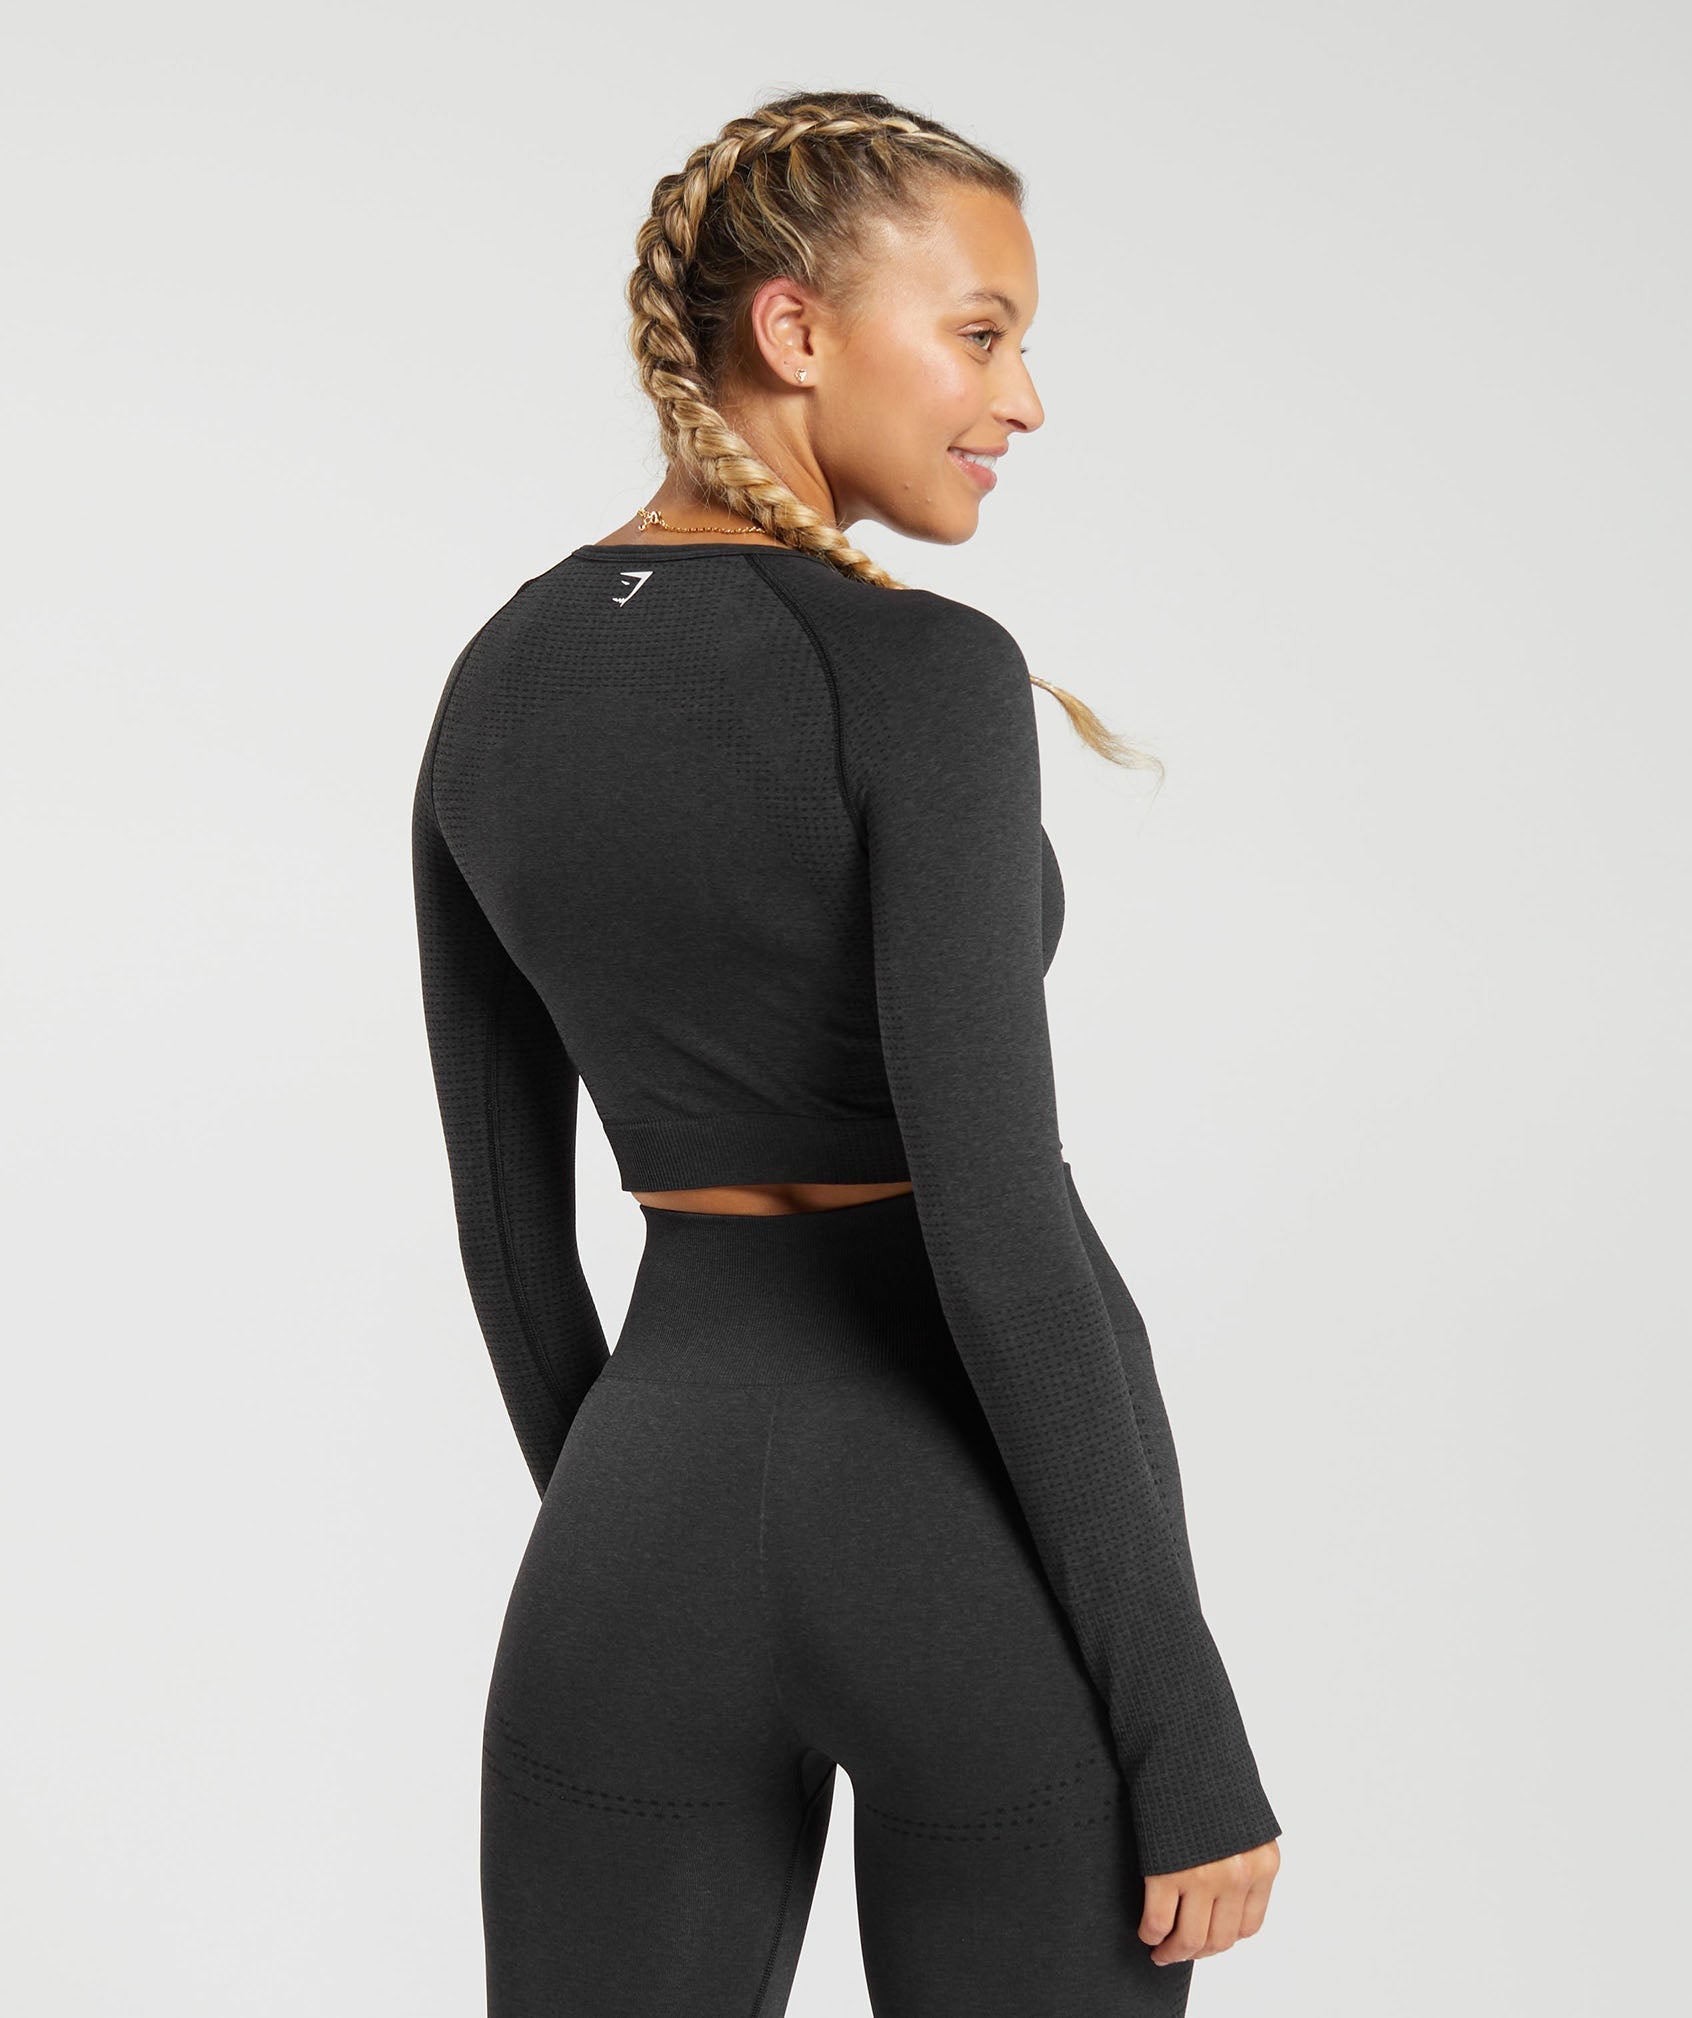 ARIS ALLEN Women 2pcs Seamless Set Sport Suit Gymwear Workout Clothes Long  Sleeve Gym Top High Waist Leggings Fitness Women Sets